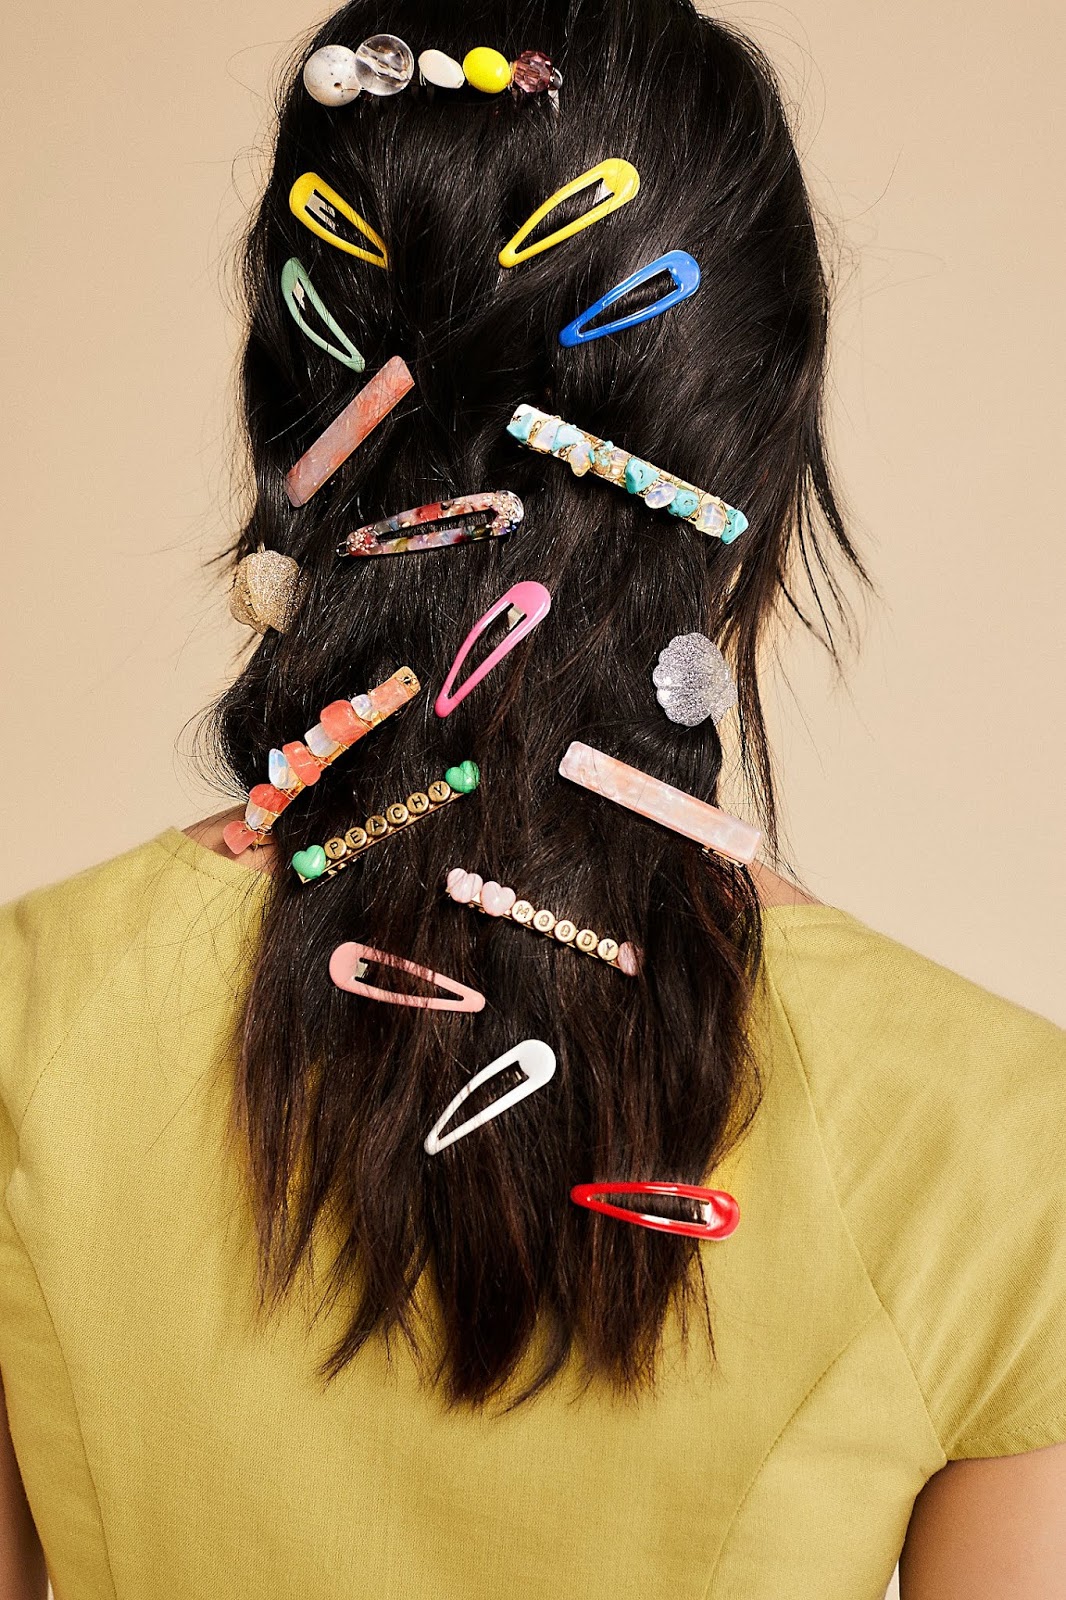 Top 5 Hair Accessories for Summer 2022 - StyleSpeak